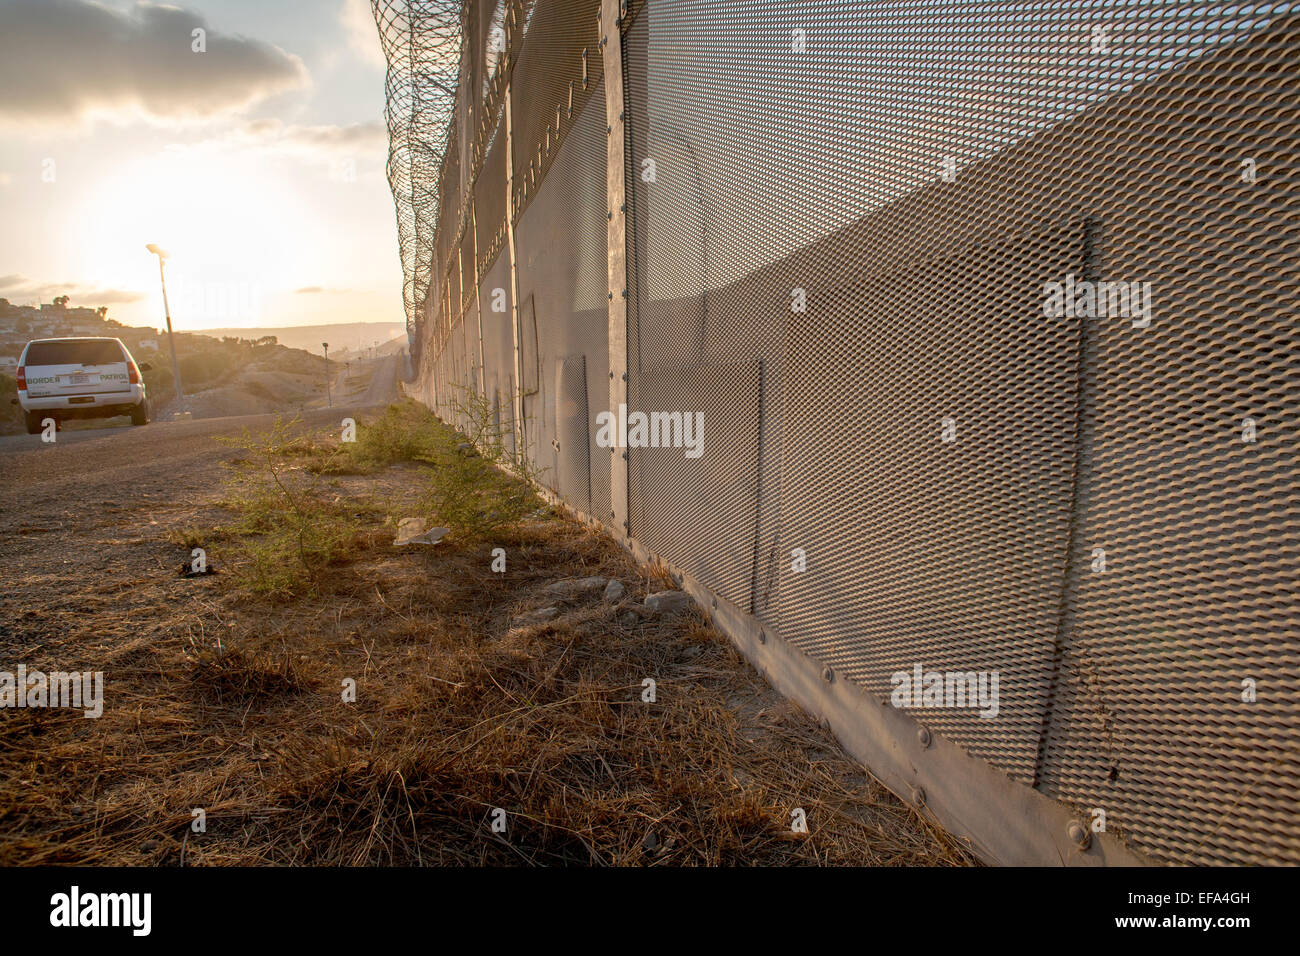 Corrigé des trous dans la clôture internationale sur la frontière États-Unis/Mexique en face de la Colonia Libertad district de Tijuana, Mexique voir les endroits où les immigrants illégaux ont tenté d'entrer aux États-Unis Remarque barbelés sur le dessus de la clôture et Border Patrol SUV dans l'arrière-plan. Banque D'Images